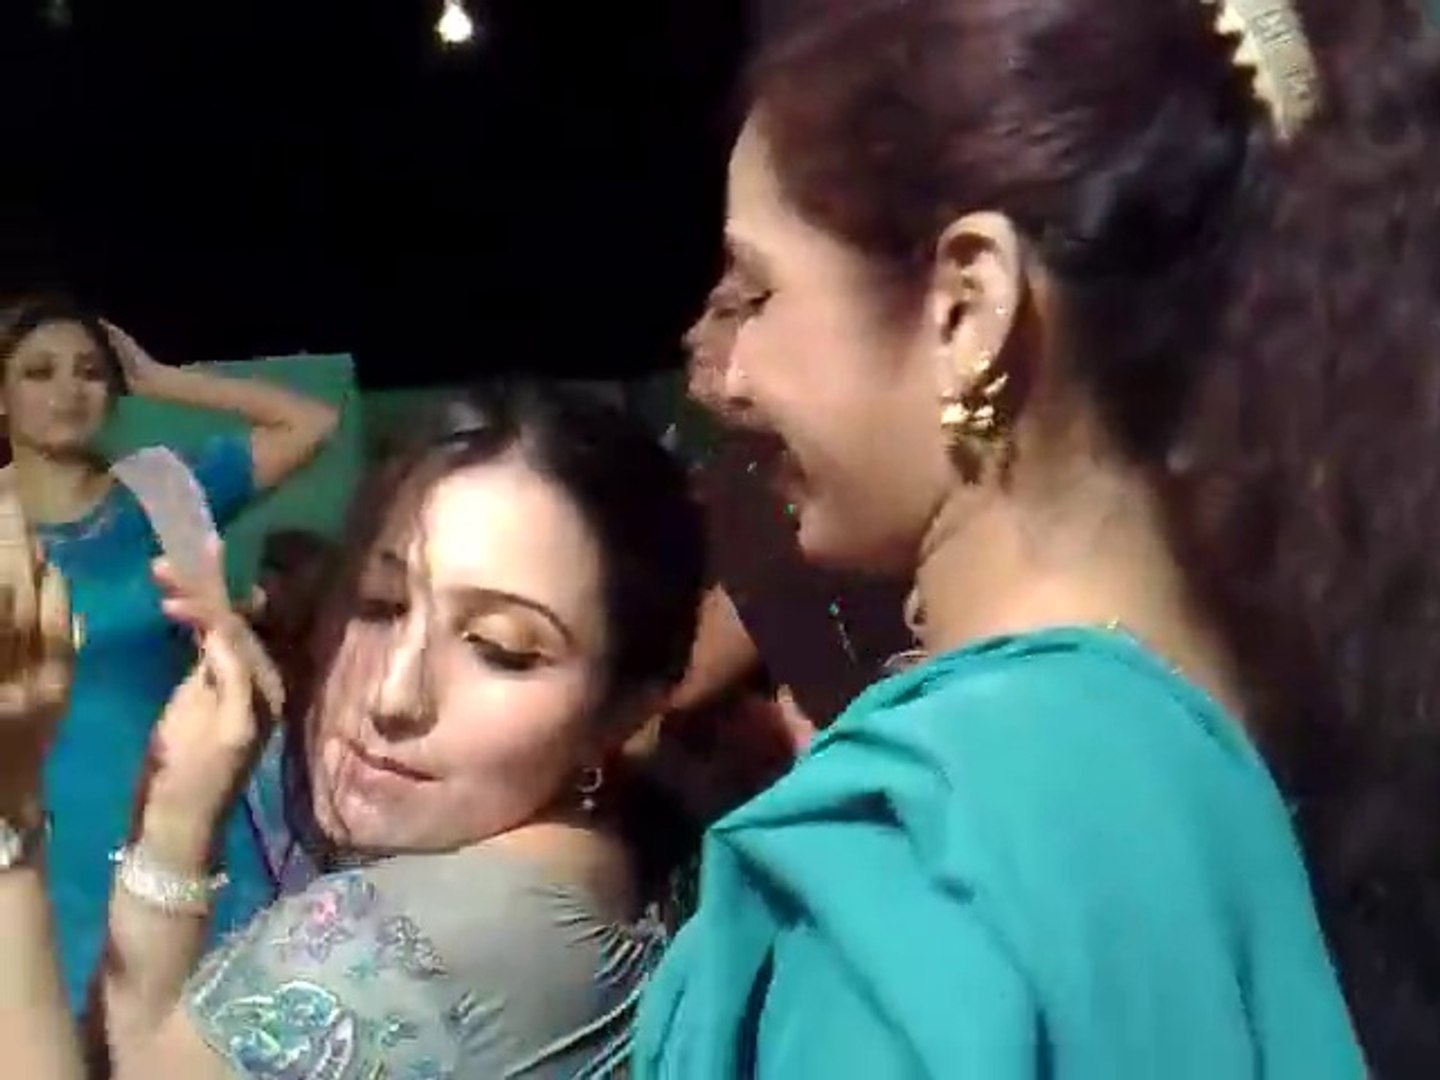 Heera Mundi Lahore Sex - Heera Mandi Full Hot Dance In Home Party - video Dailymotion